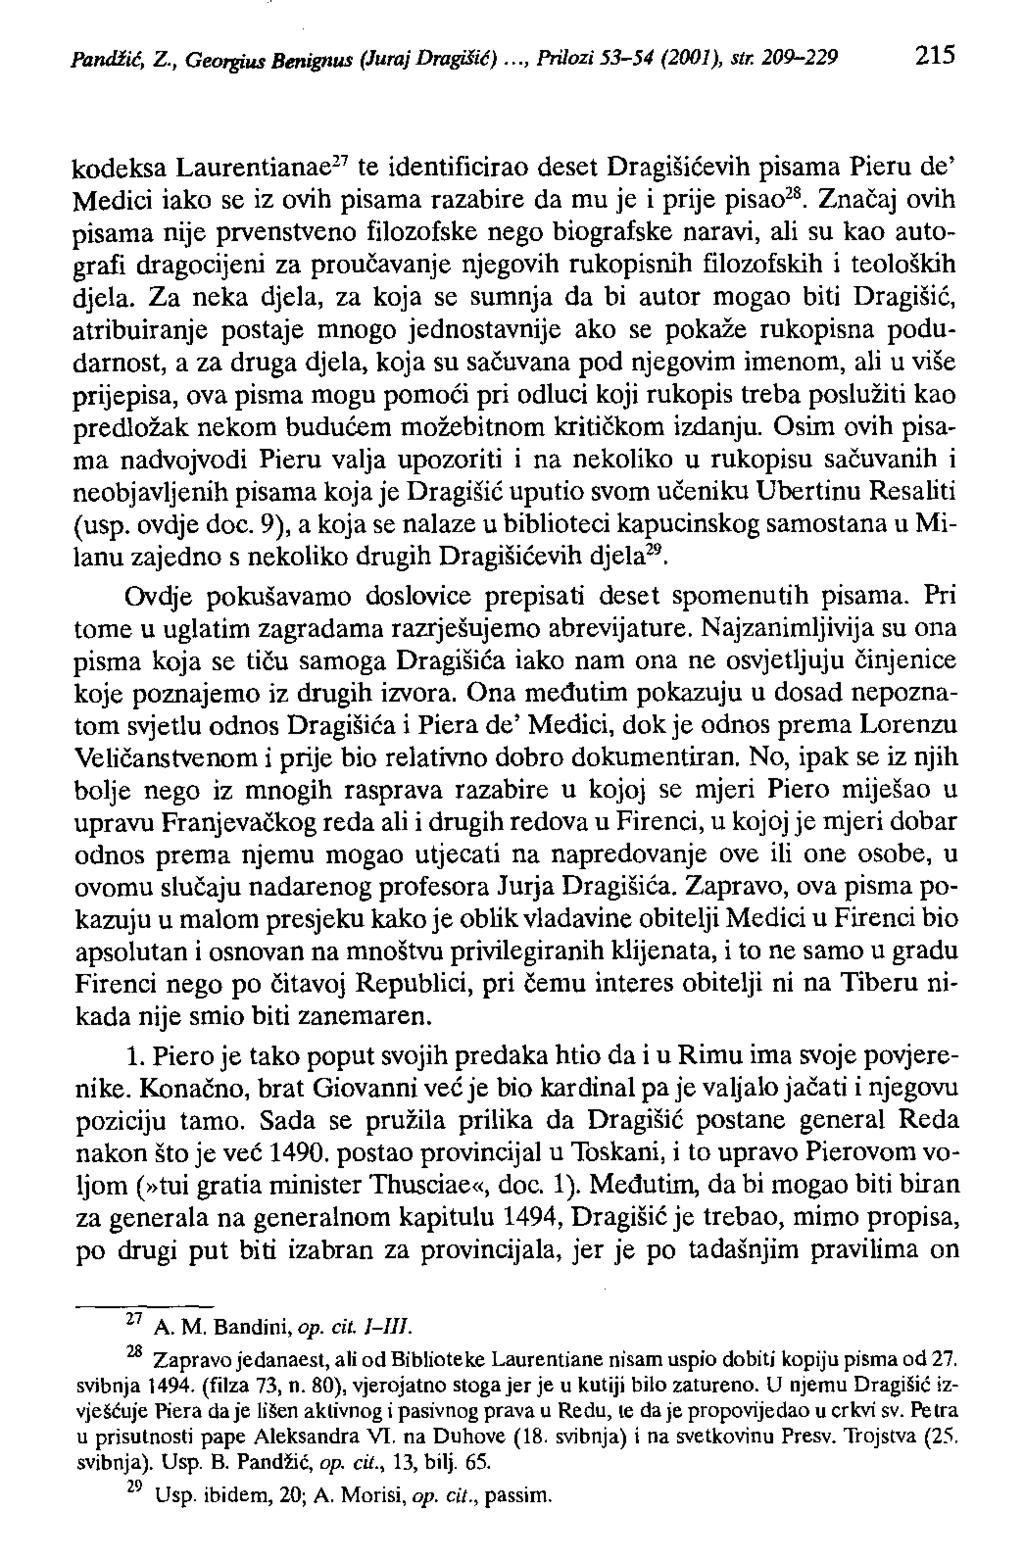 Pandiić, Z., Geotgius Benignus (Juraj Dragišić)..., Prilozi 53-54 (2001), str.